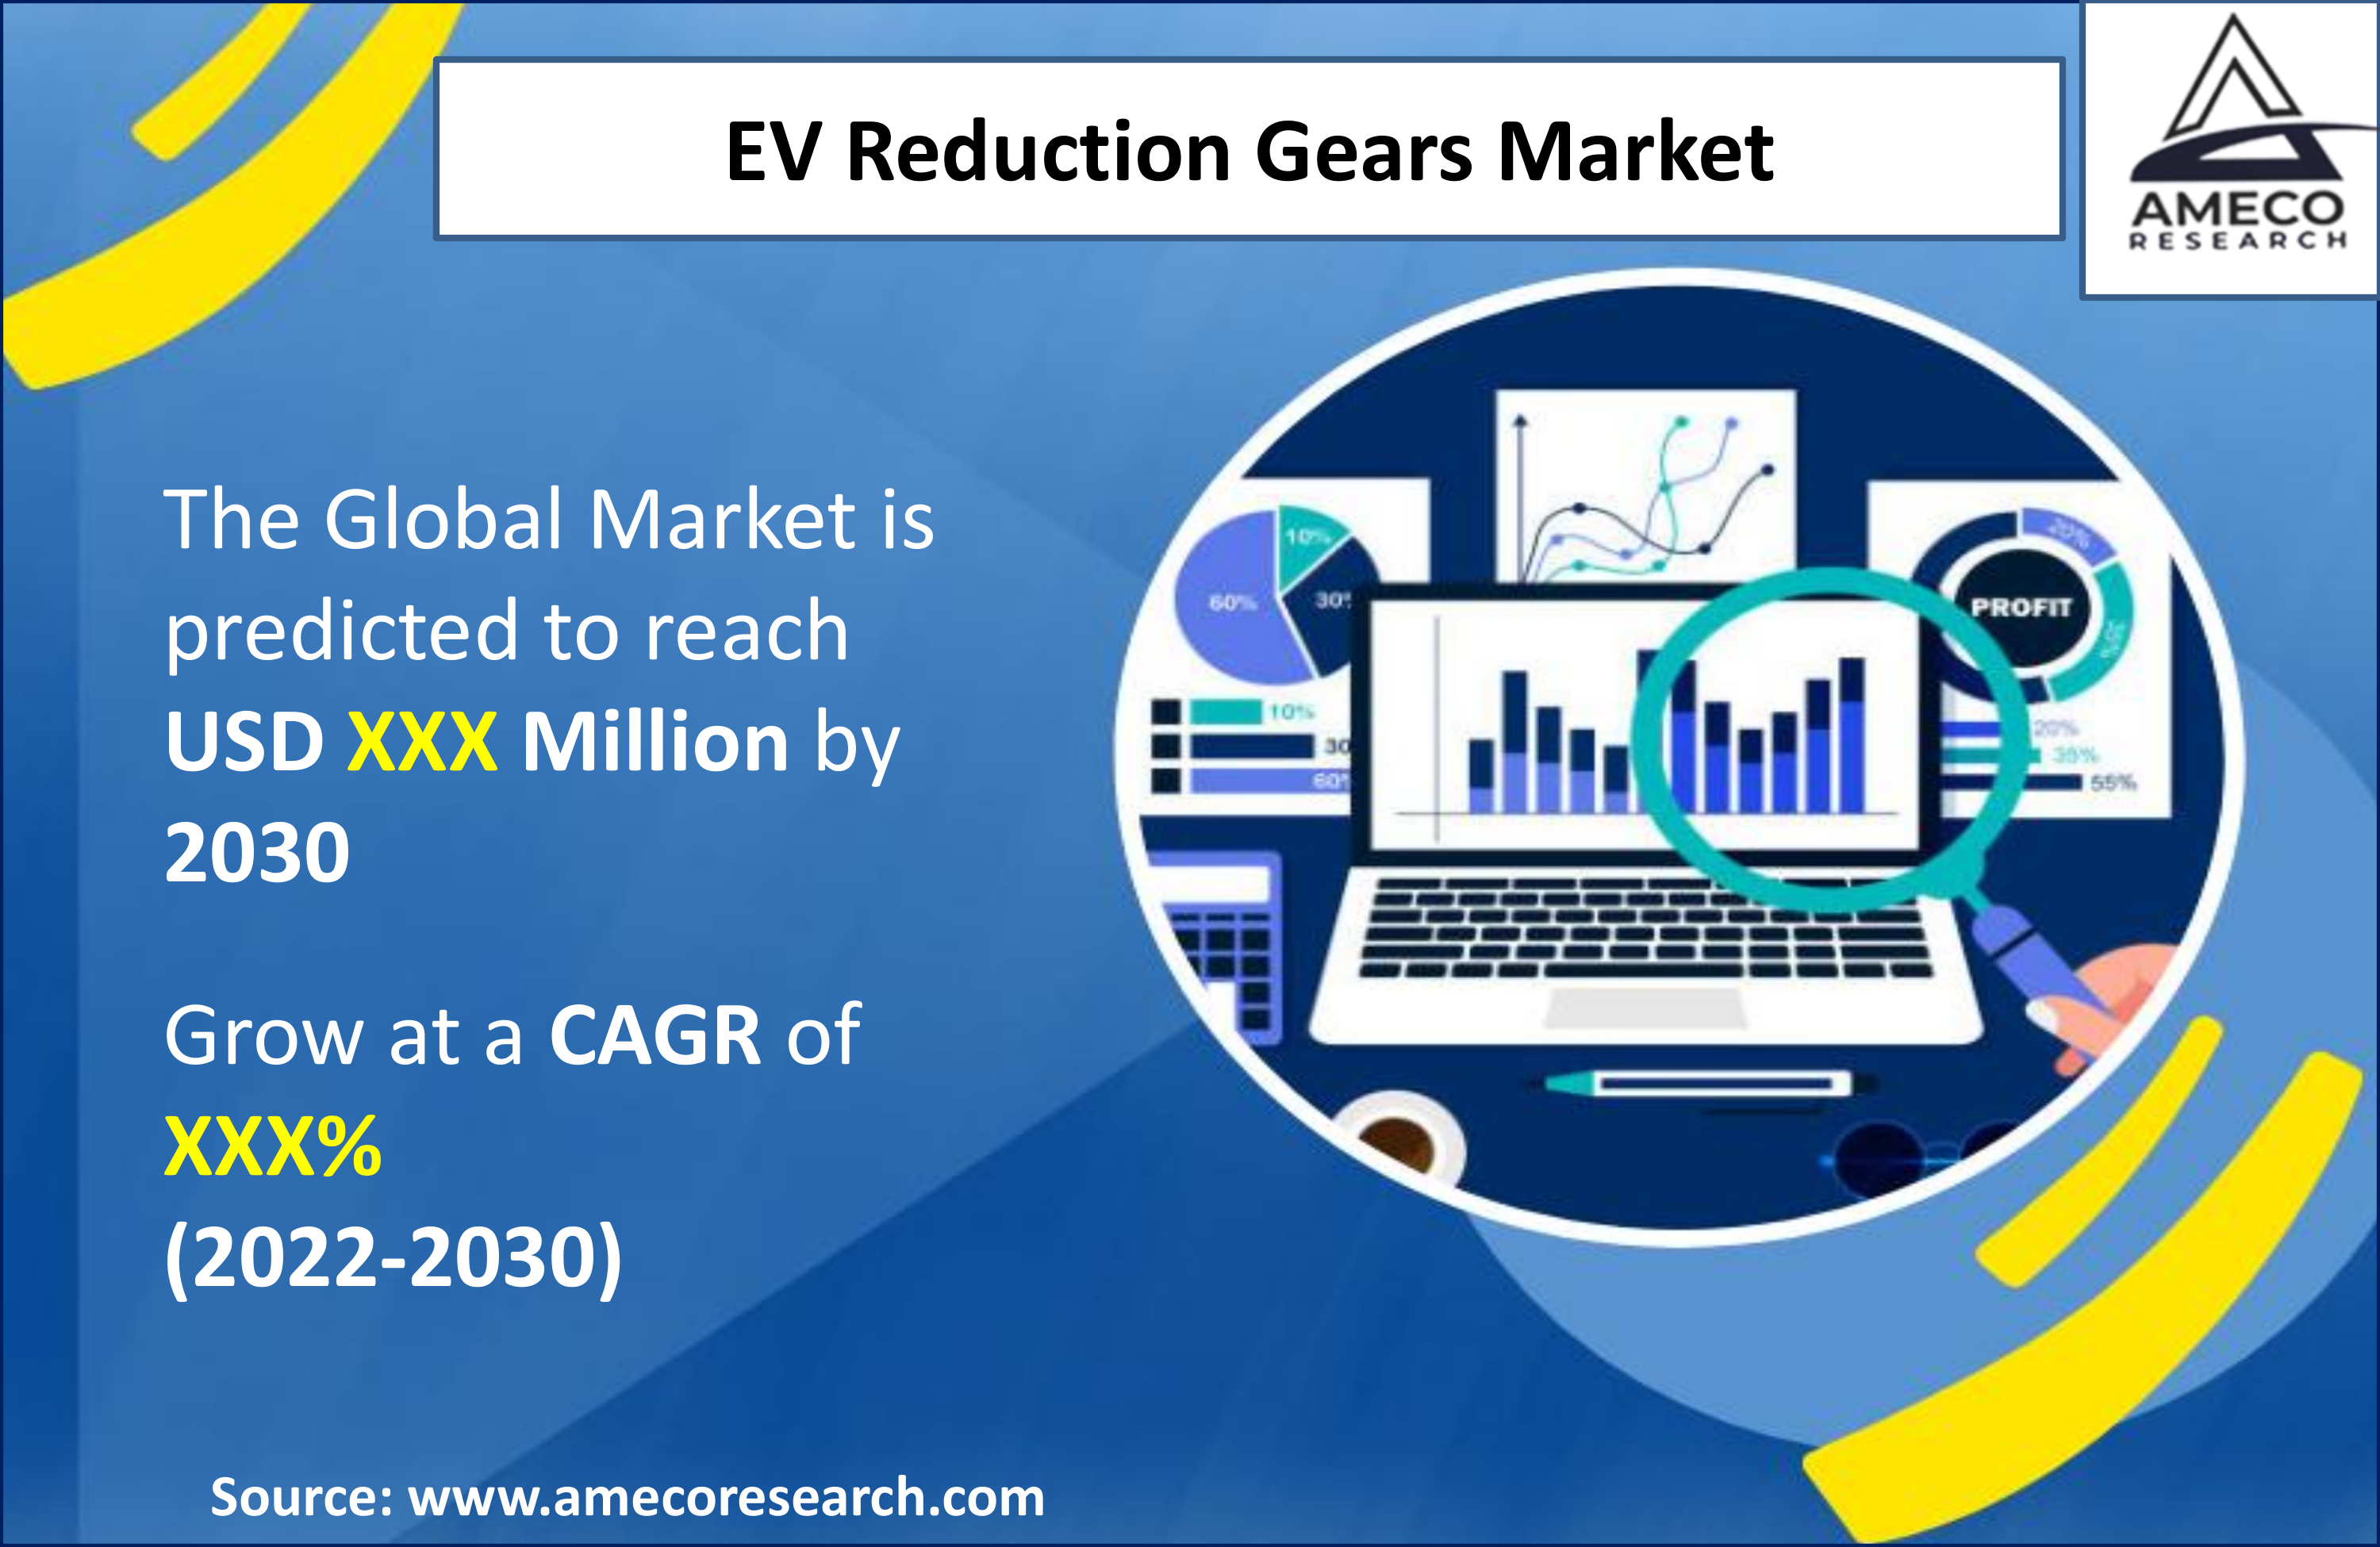 EV Reduction Gears Market